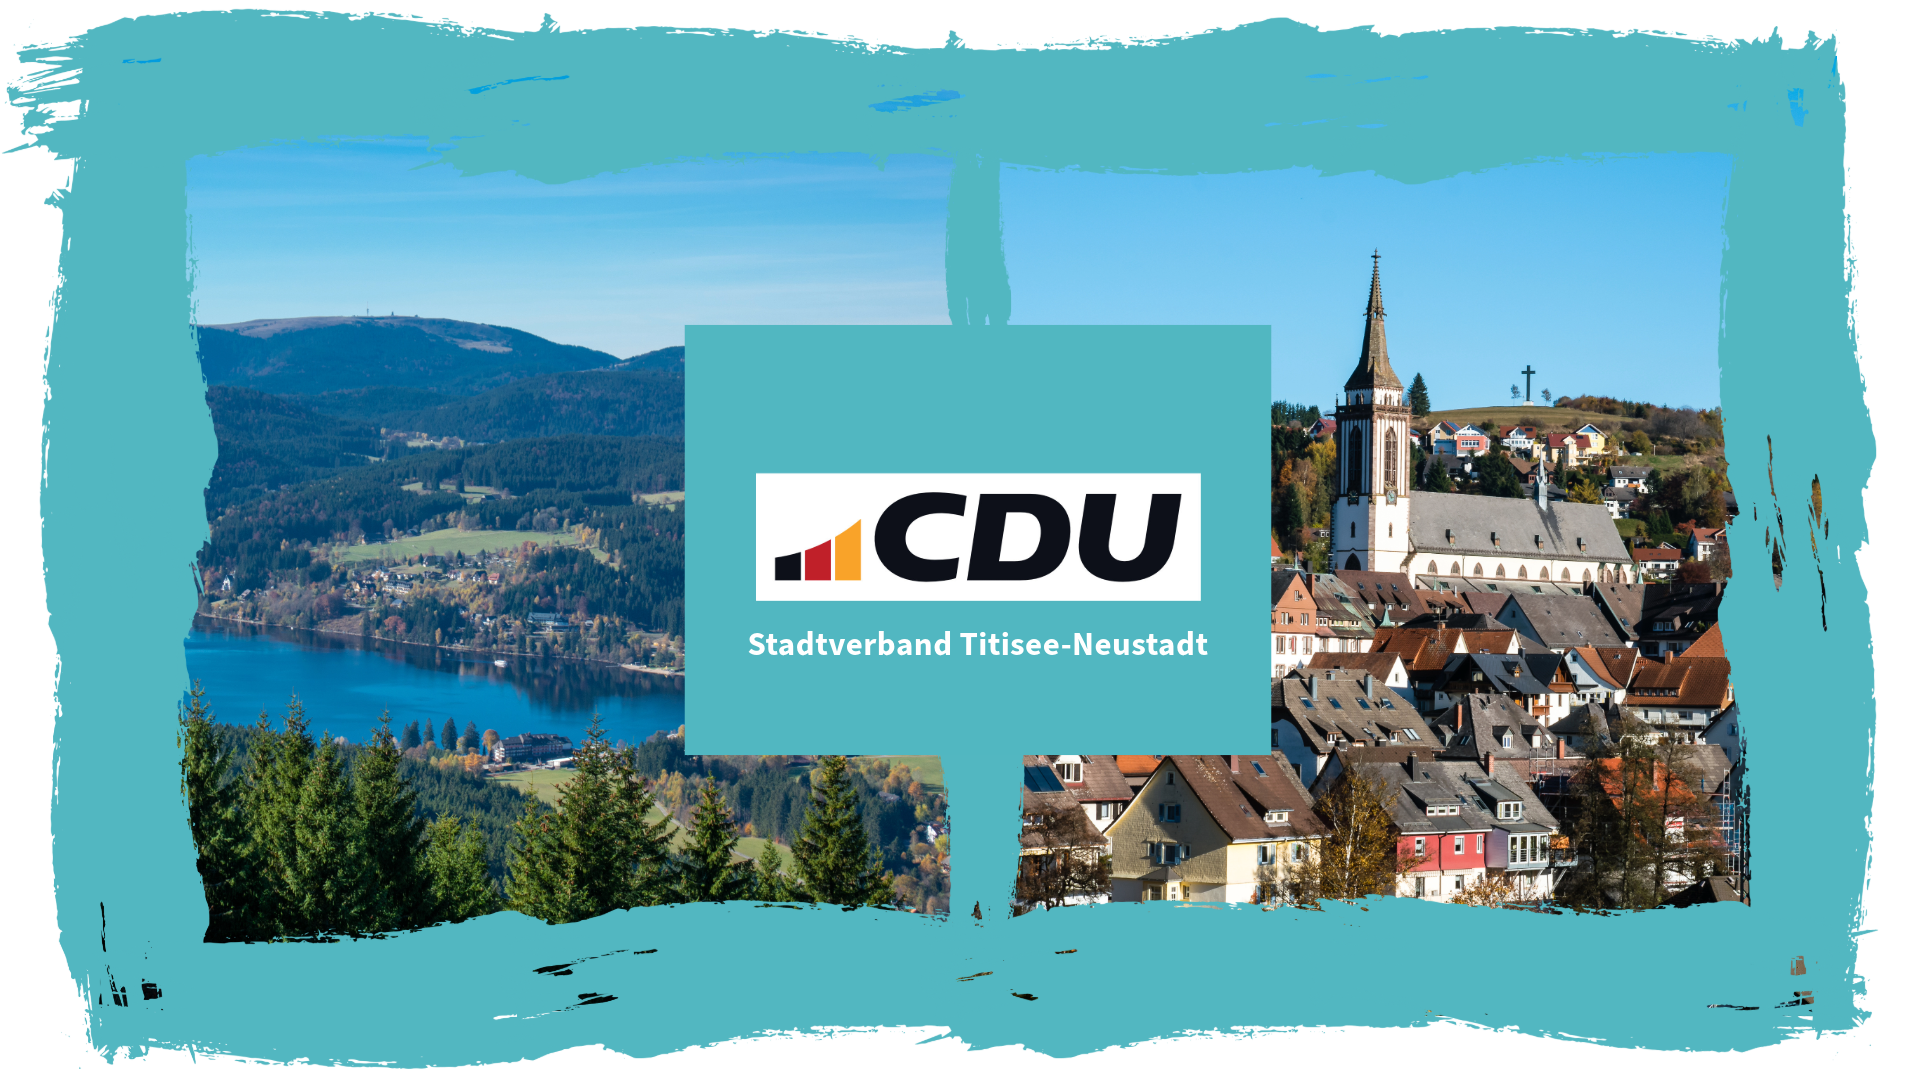 CDU Stadtverband Titisee-Neustadt